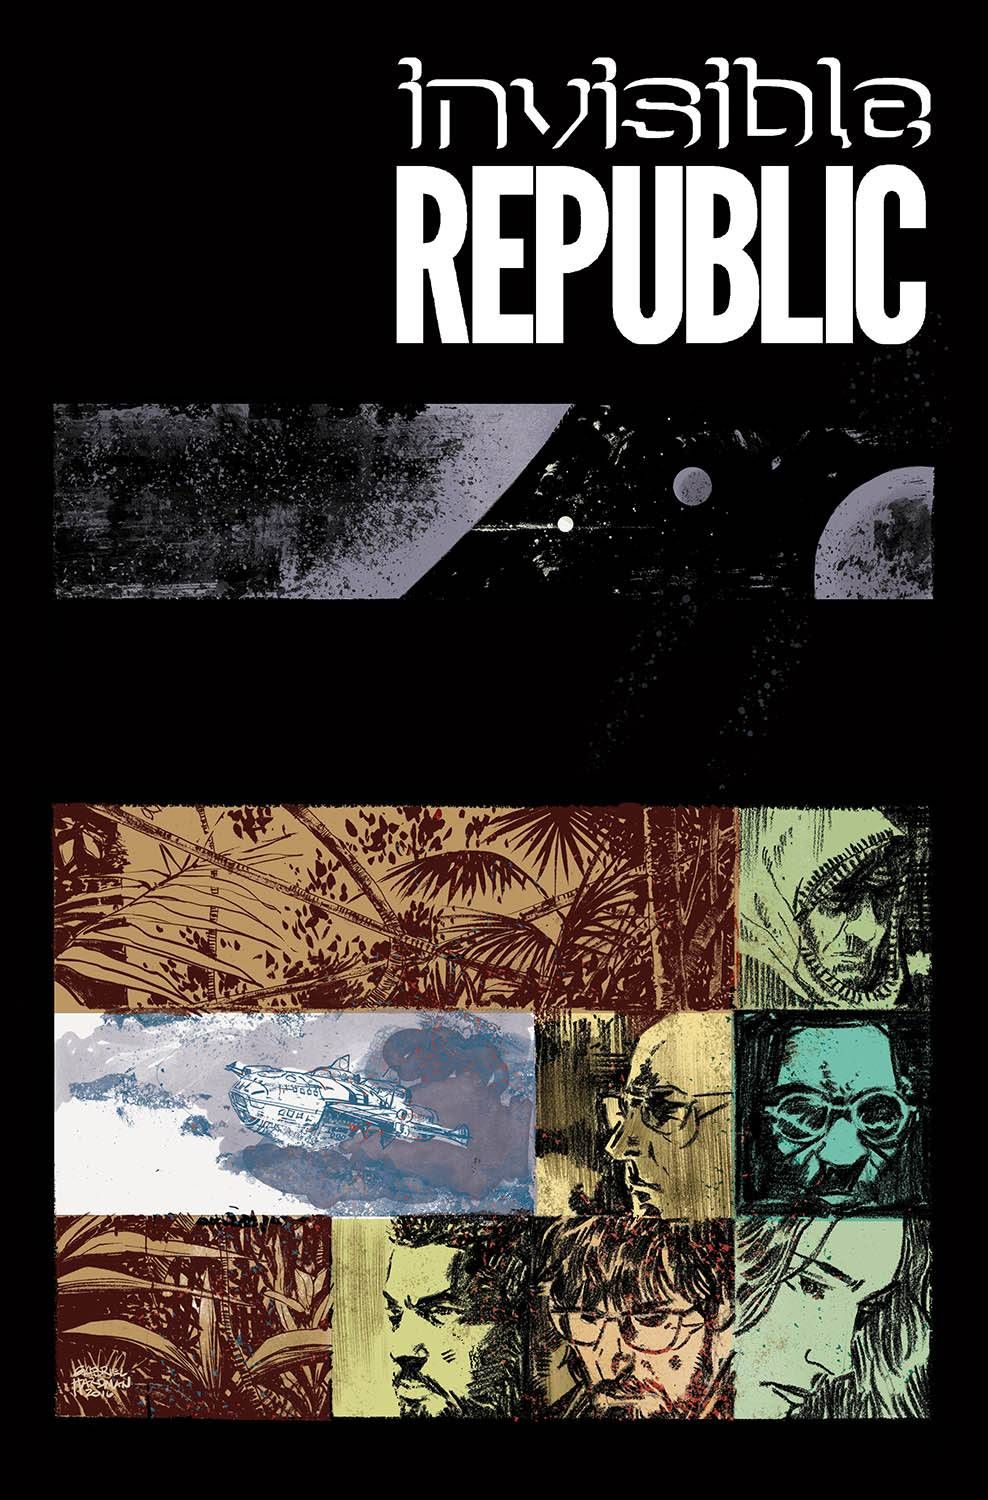 Invisible Republic #13 Comic